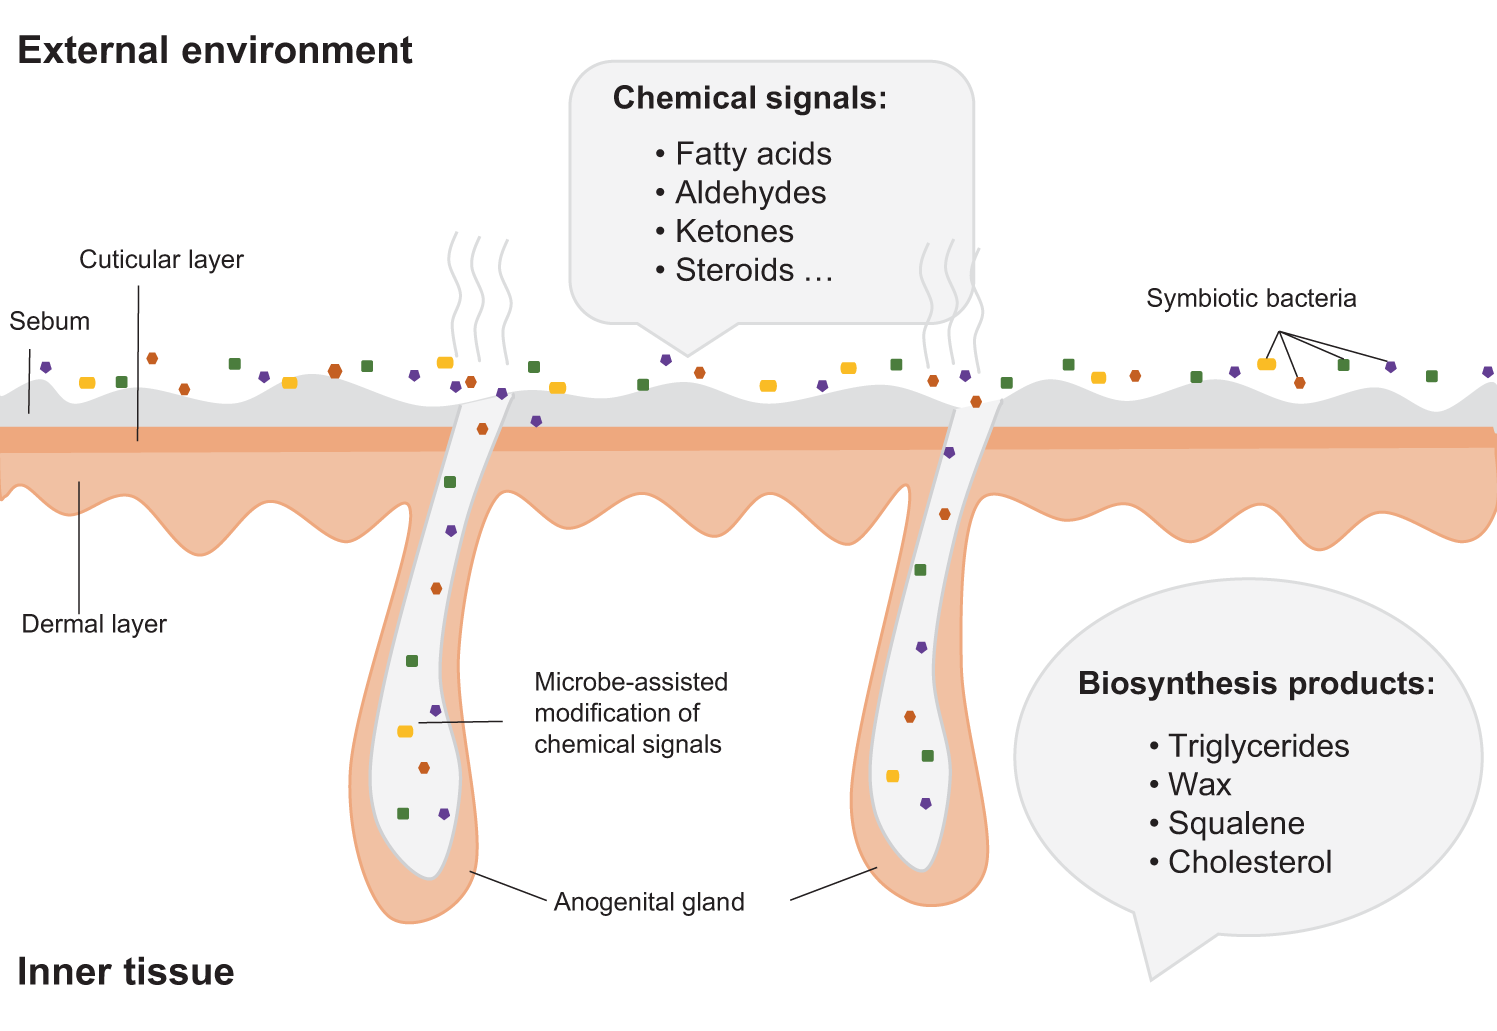 Microbial Origins of Body Odor